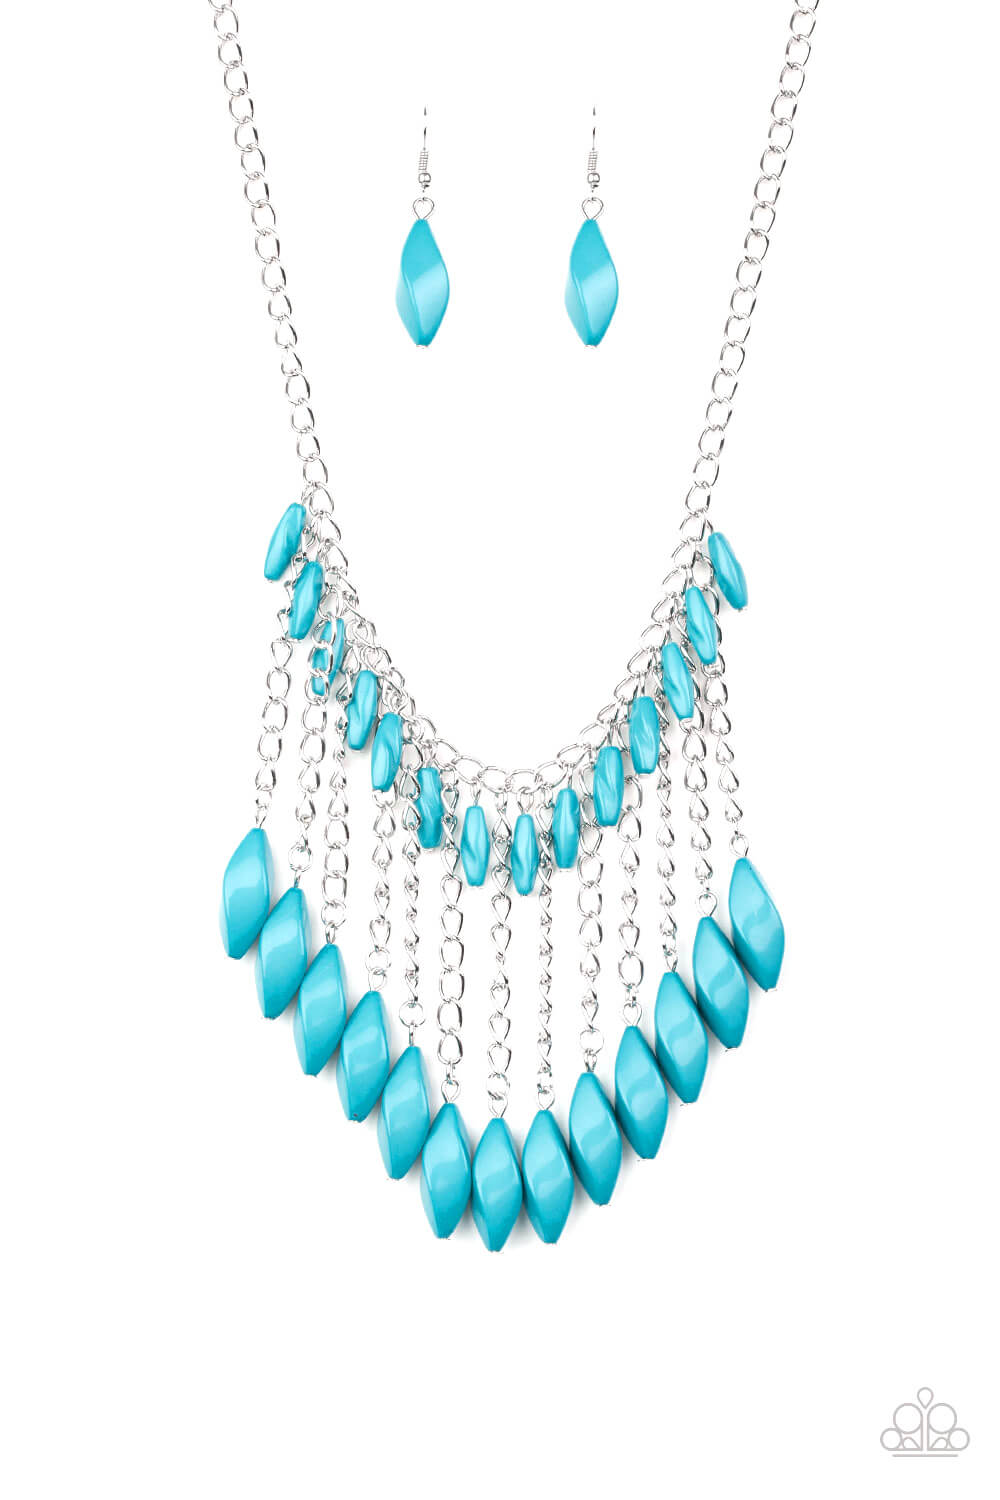 Venturous Vibes - Blue Necklace Set - Princess Glam Shop